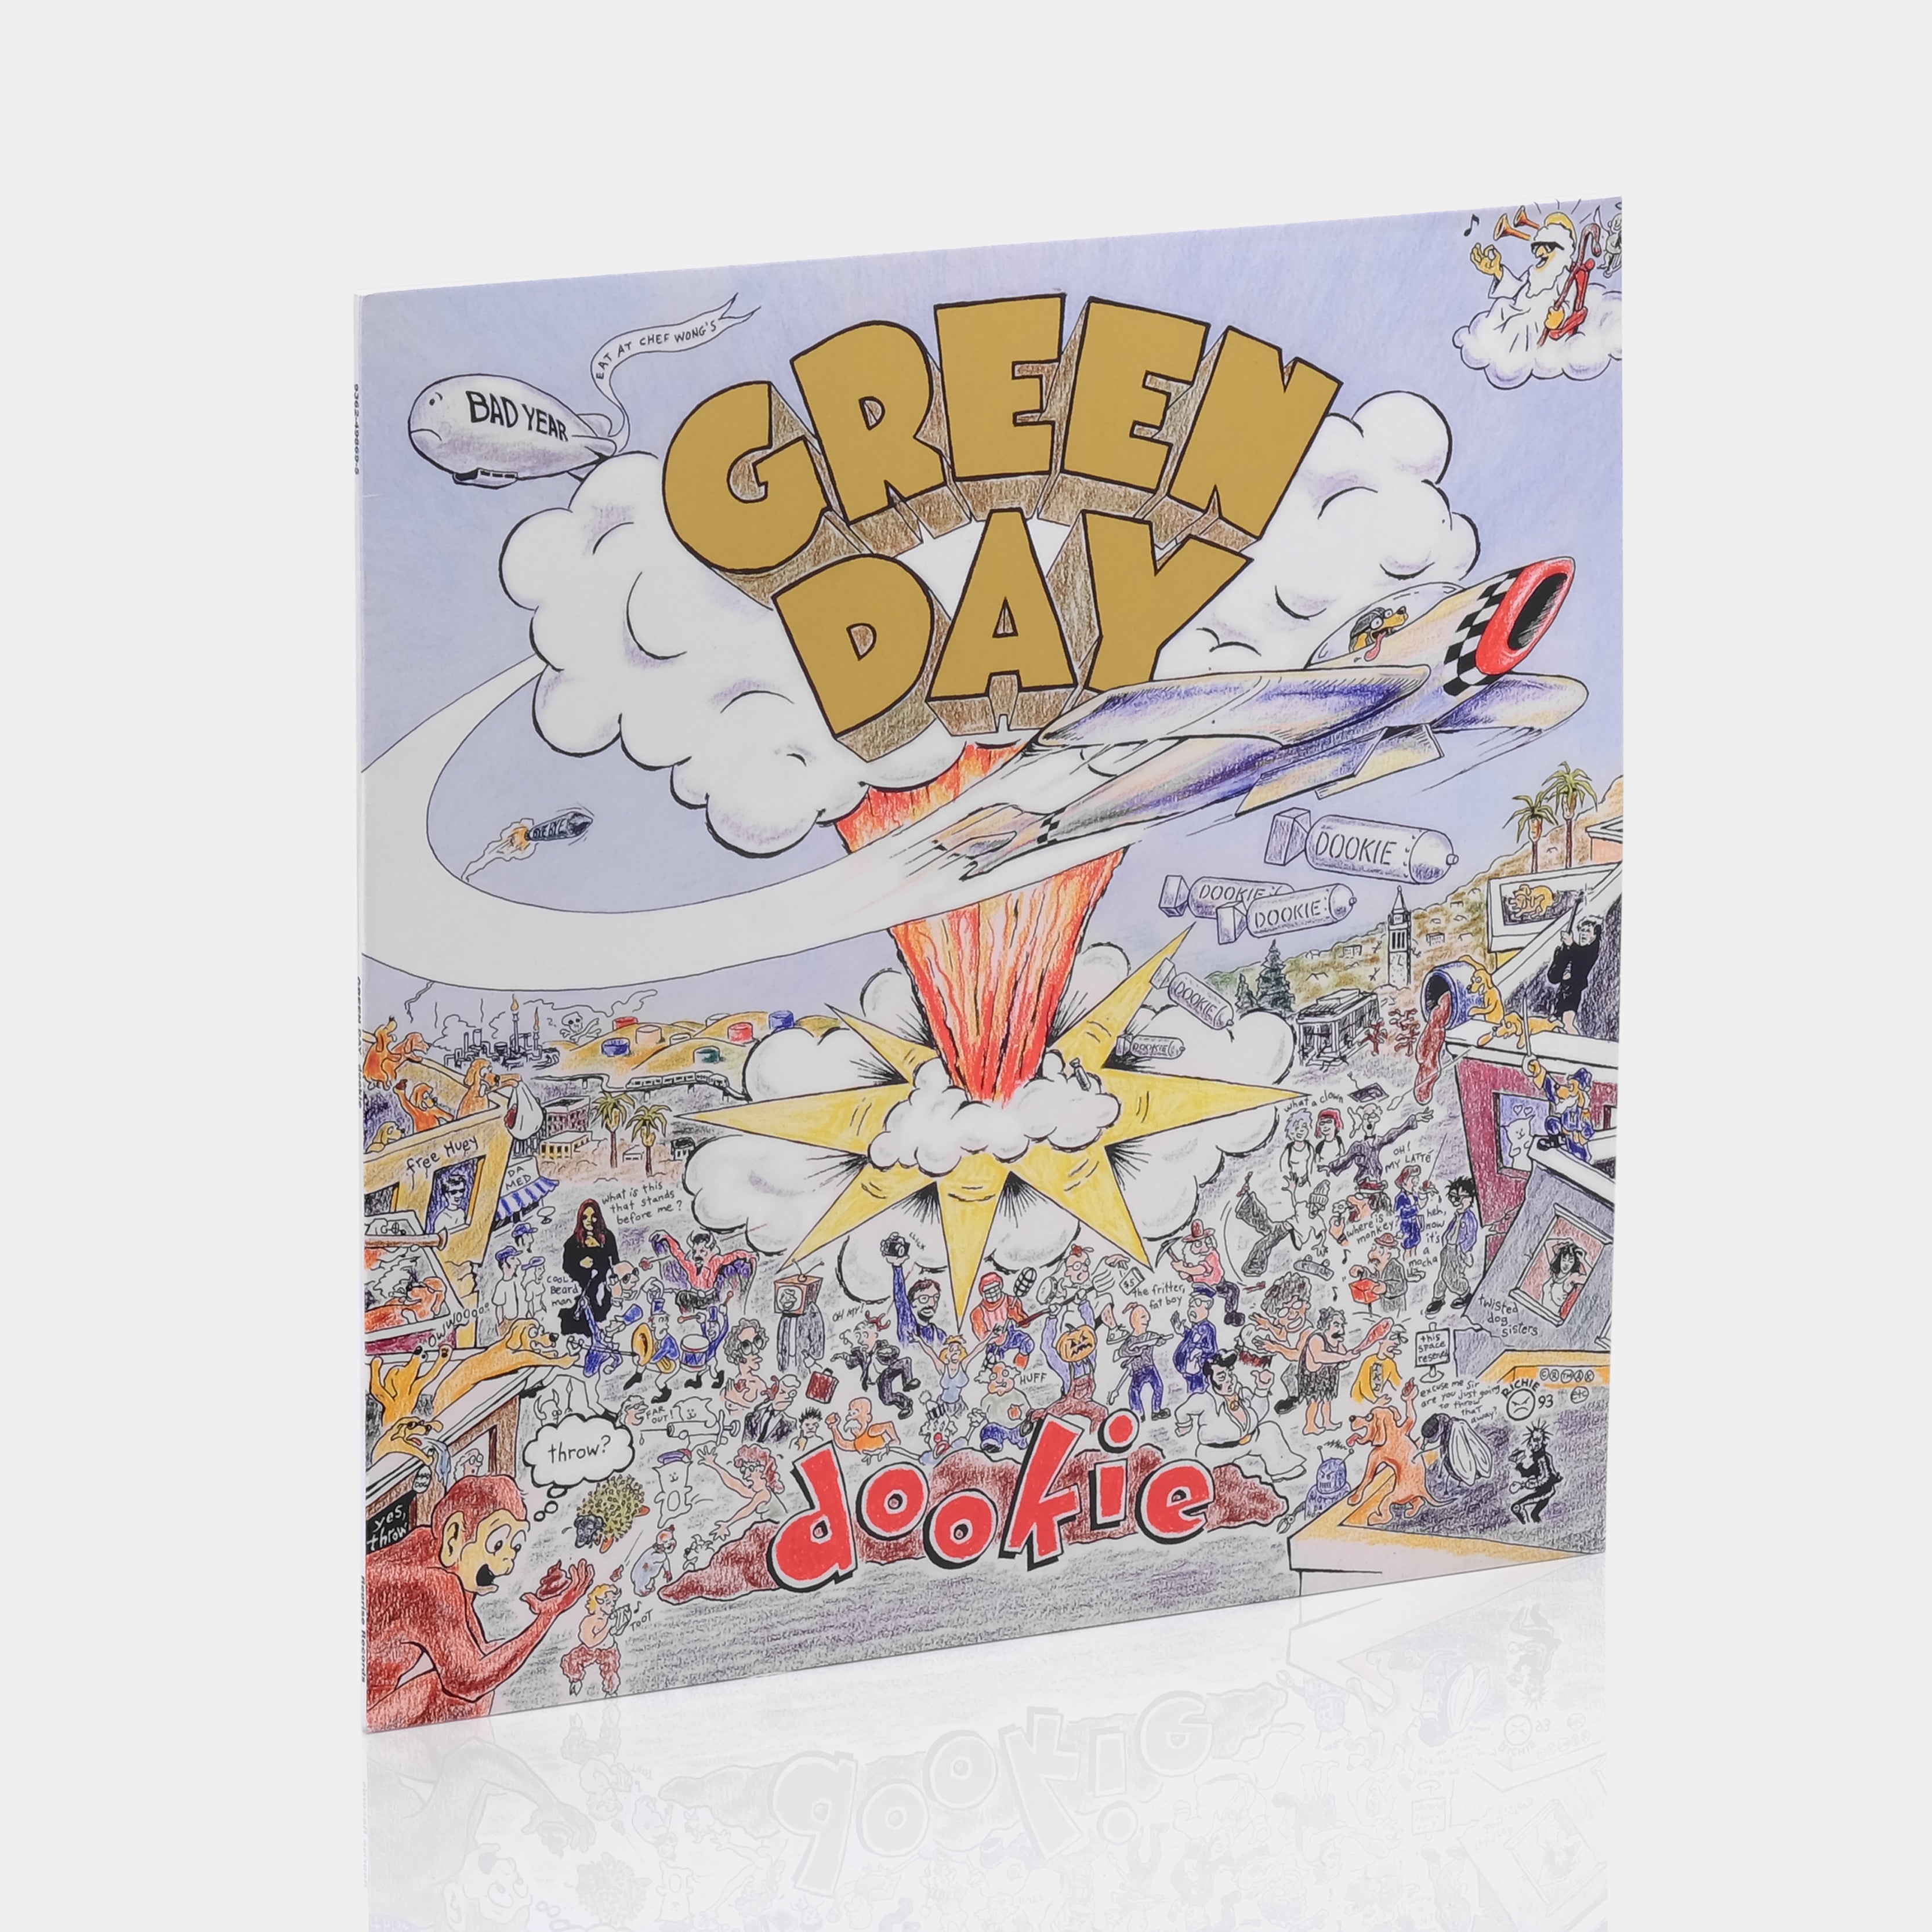 Green Day - Dookie [Vinyl LP]